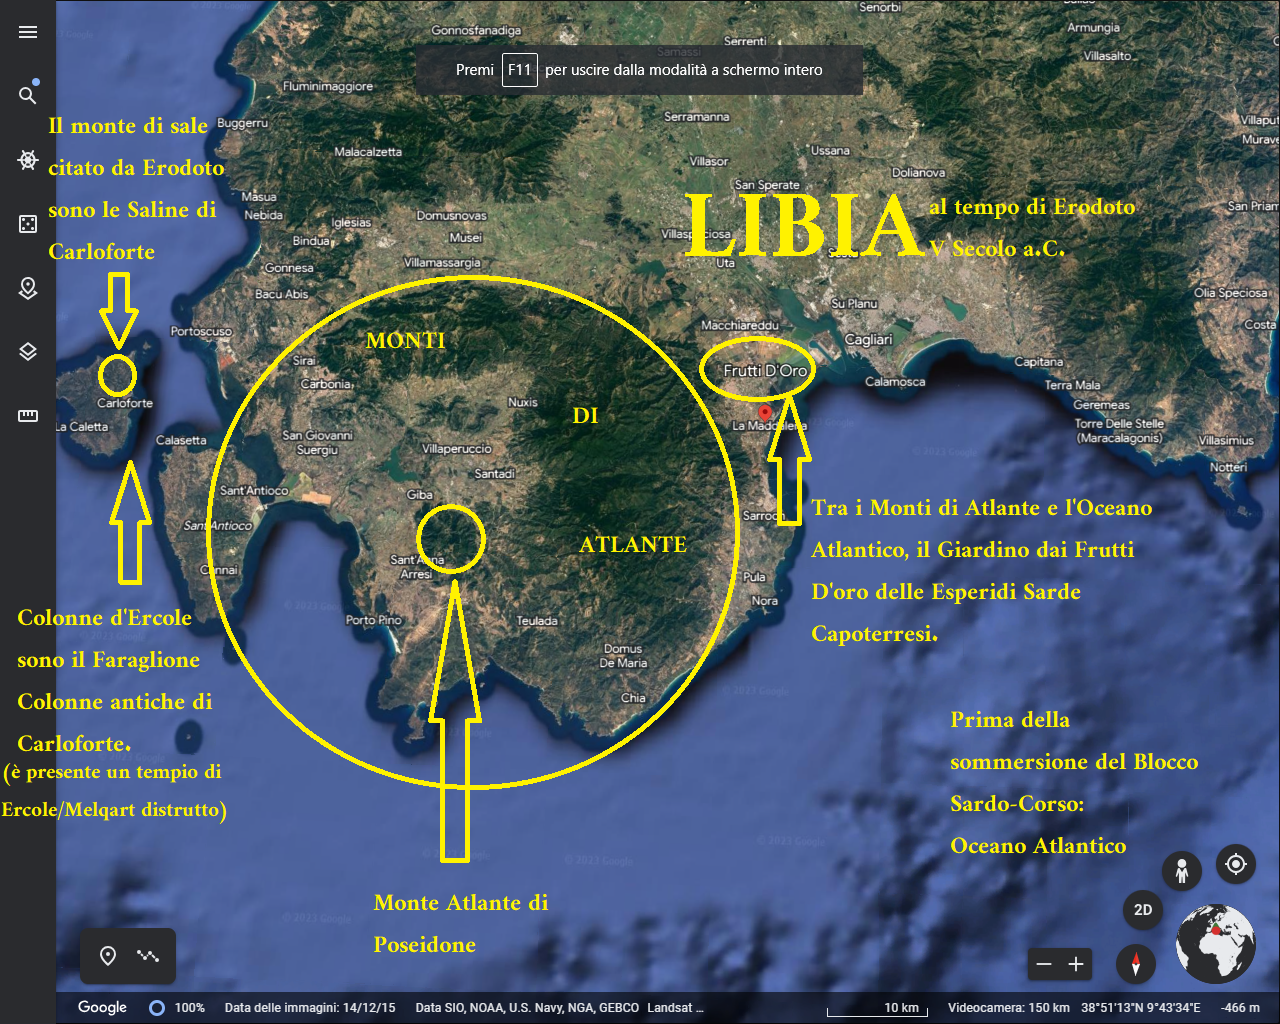 Hasta hoy la cartografía de la Libia herodotea se ha equivocado: Libia es la provincia de Cagliari